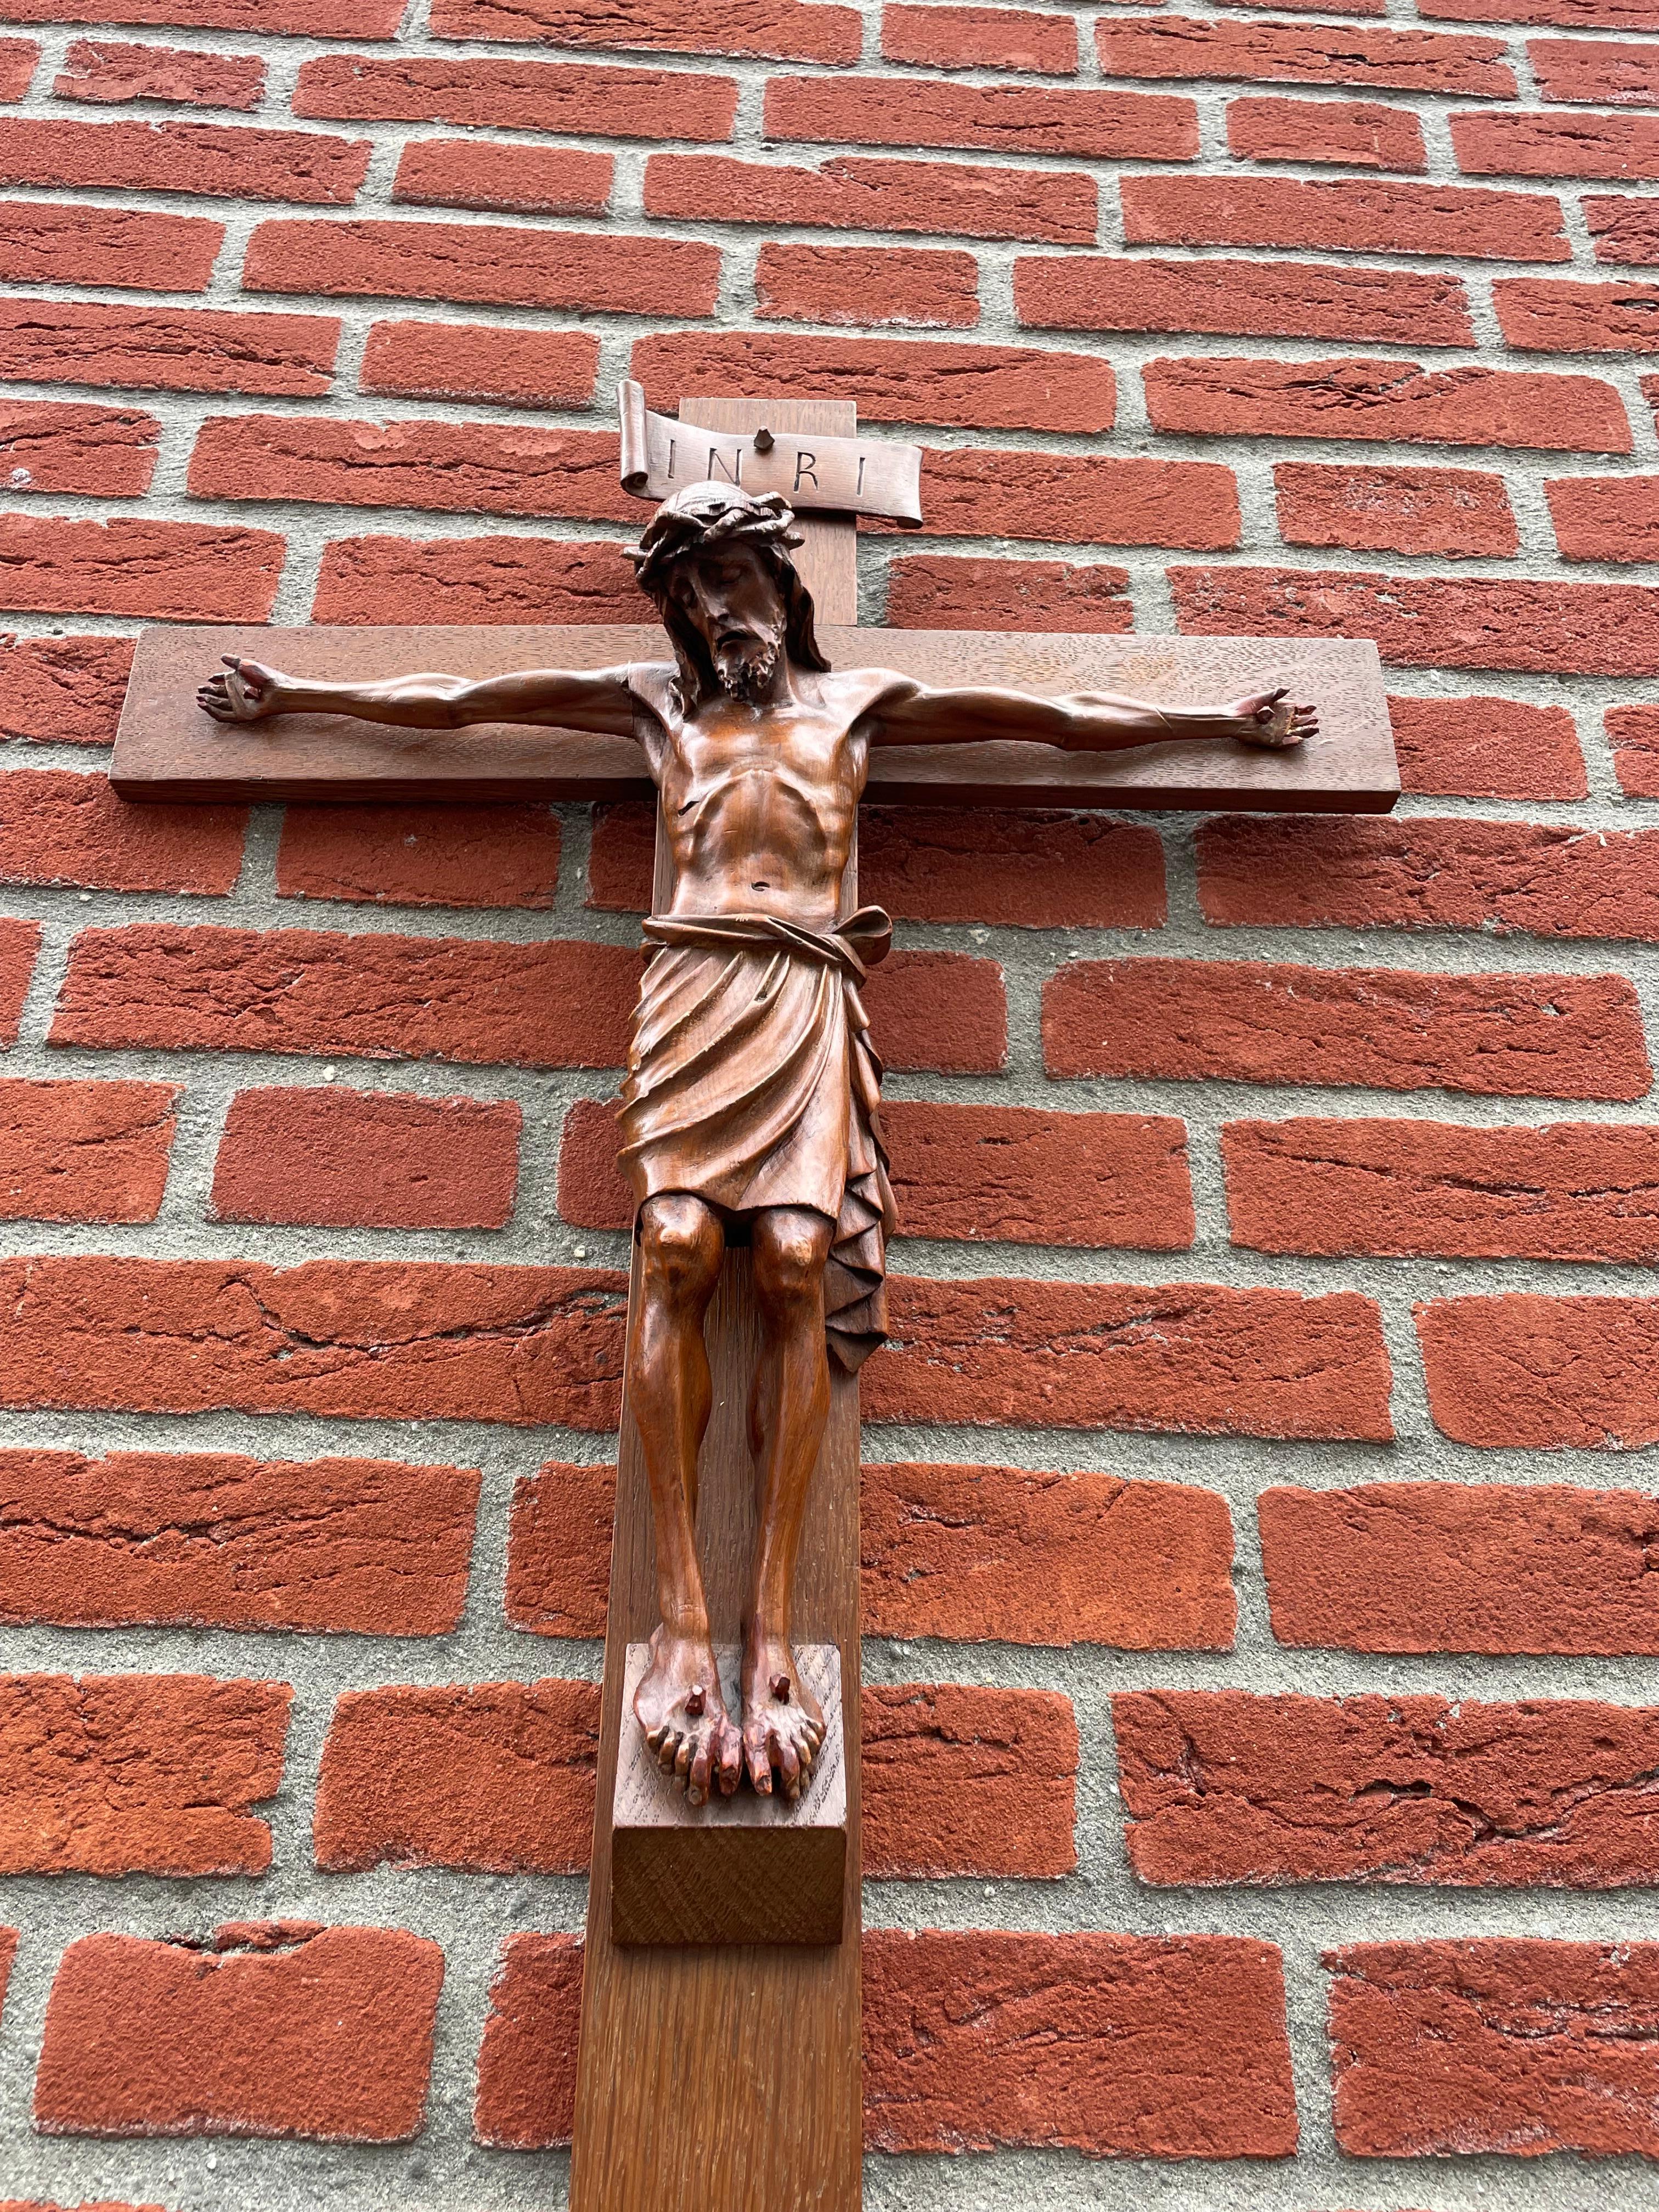 Crucifix de grande taille avec un corps du Christ sculpté de qualité supérieure.

En regardant le Christ de cette manière et en pensant à la façon horrible dont il a perdu sa vie terrestre, le crucifix (à notre avis) est un symbole de ce à quoi peut